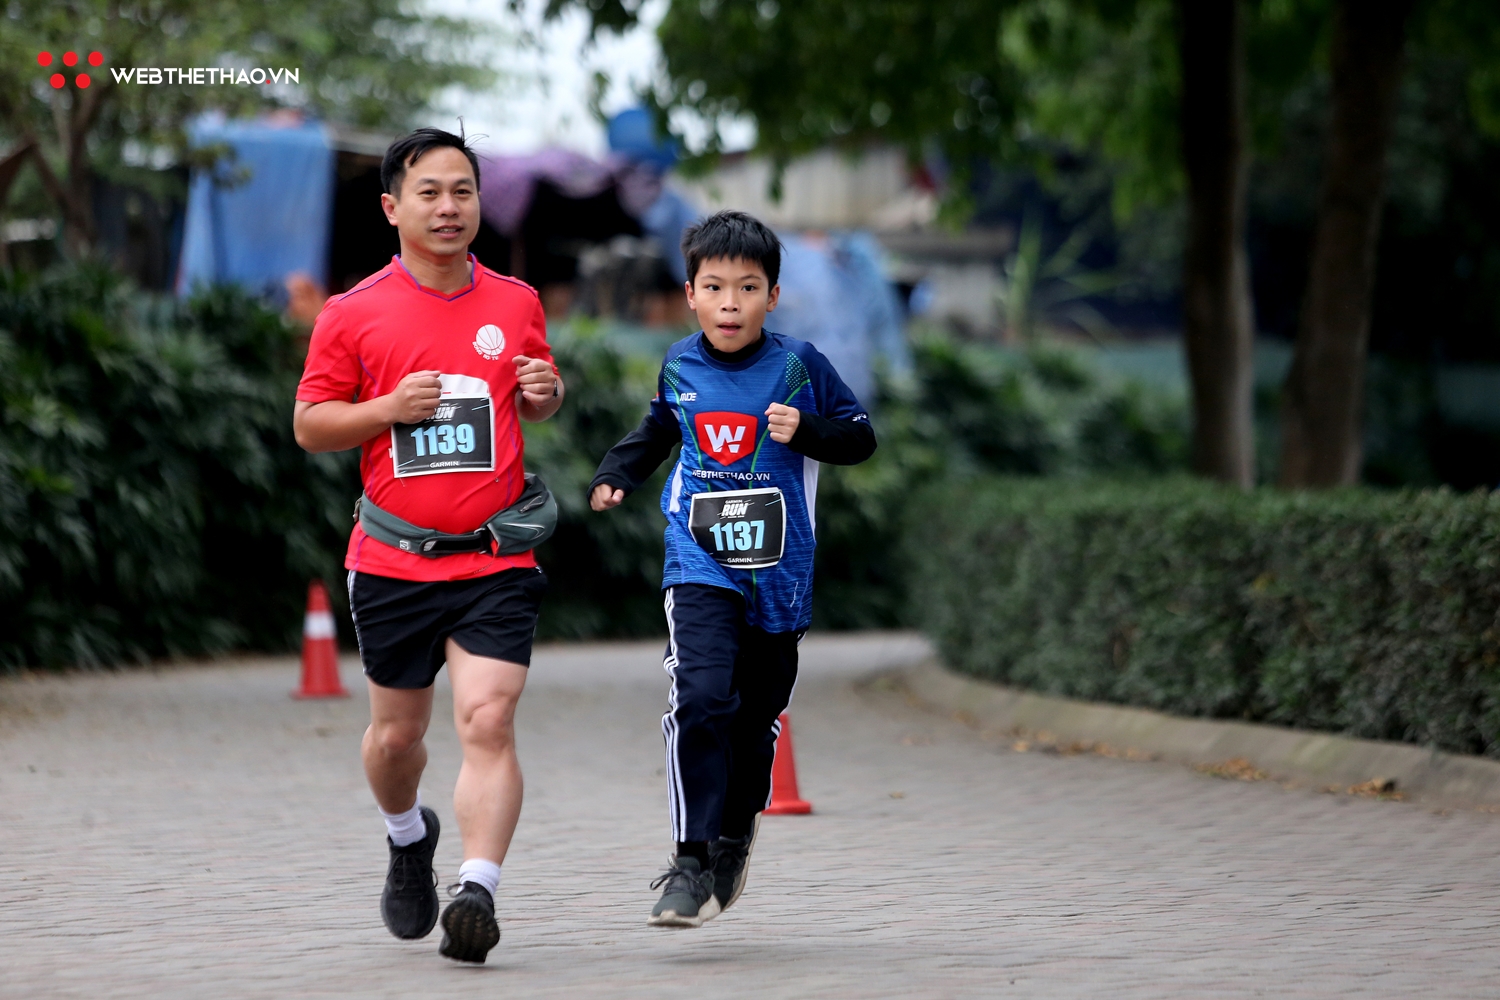 Hàng trăm runner sải bước tại Garmin Run Hanoi 2019 dưới cái lạnh 15 độ